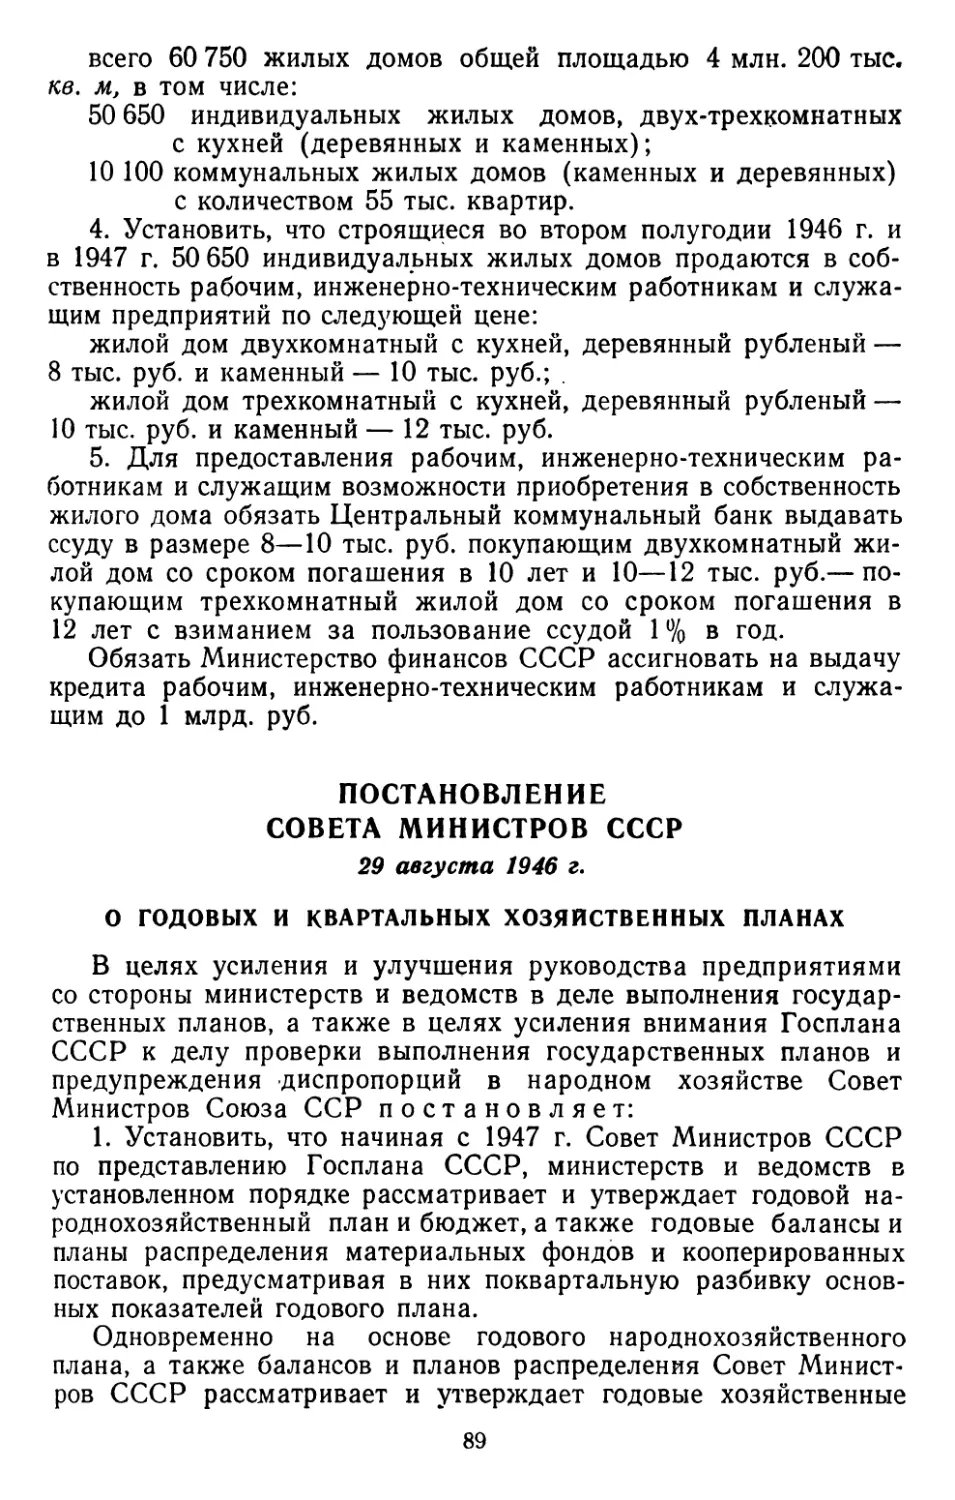 Постановление Совета Министров СССР, 29 августа 1946 г. О годовых и квартальных хозяйственных планах